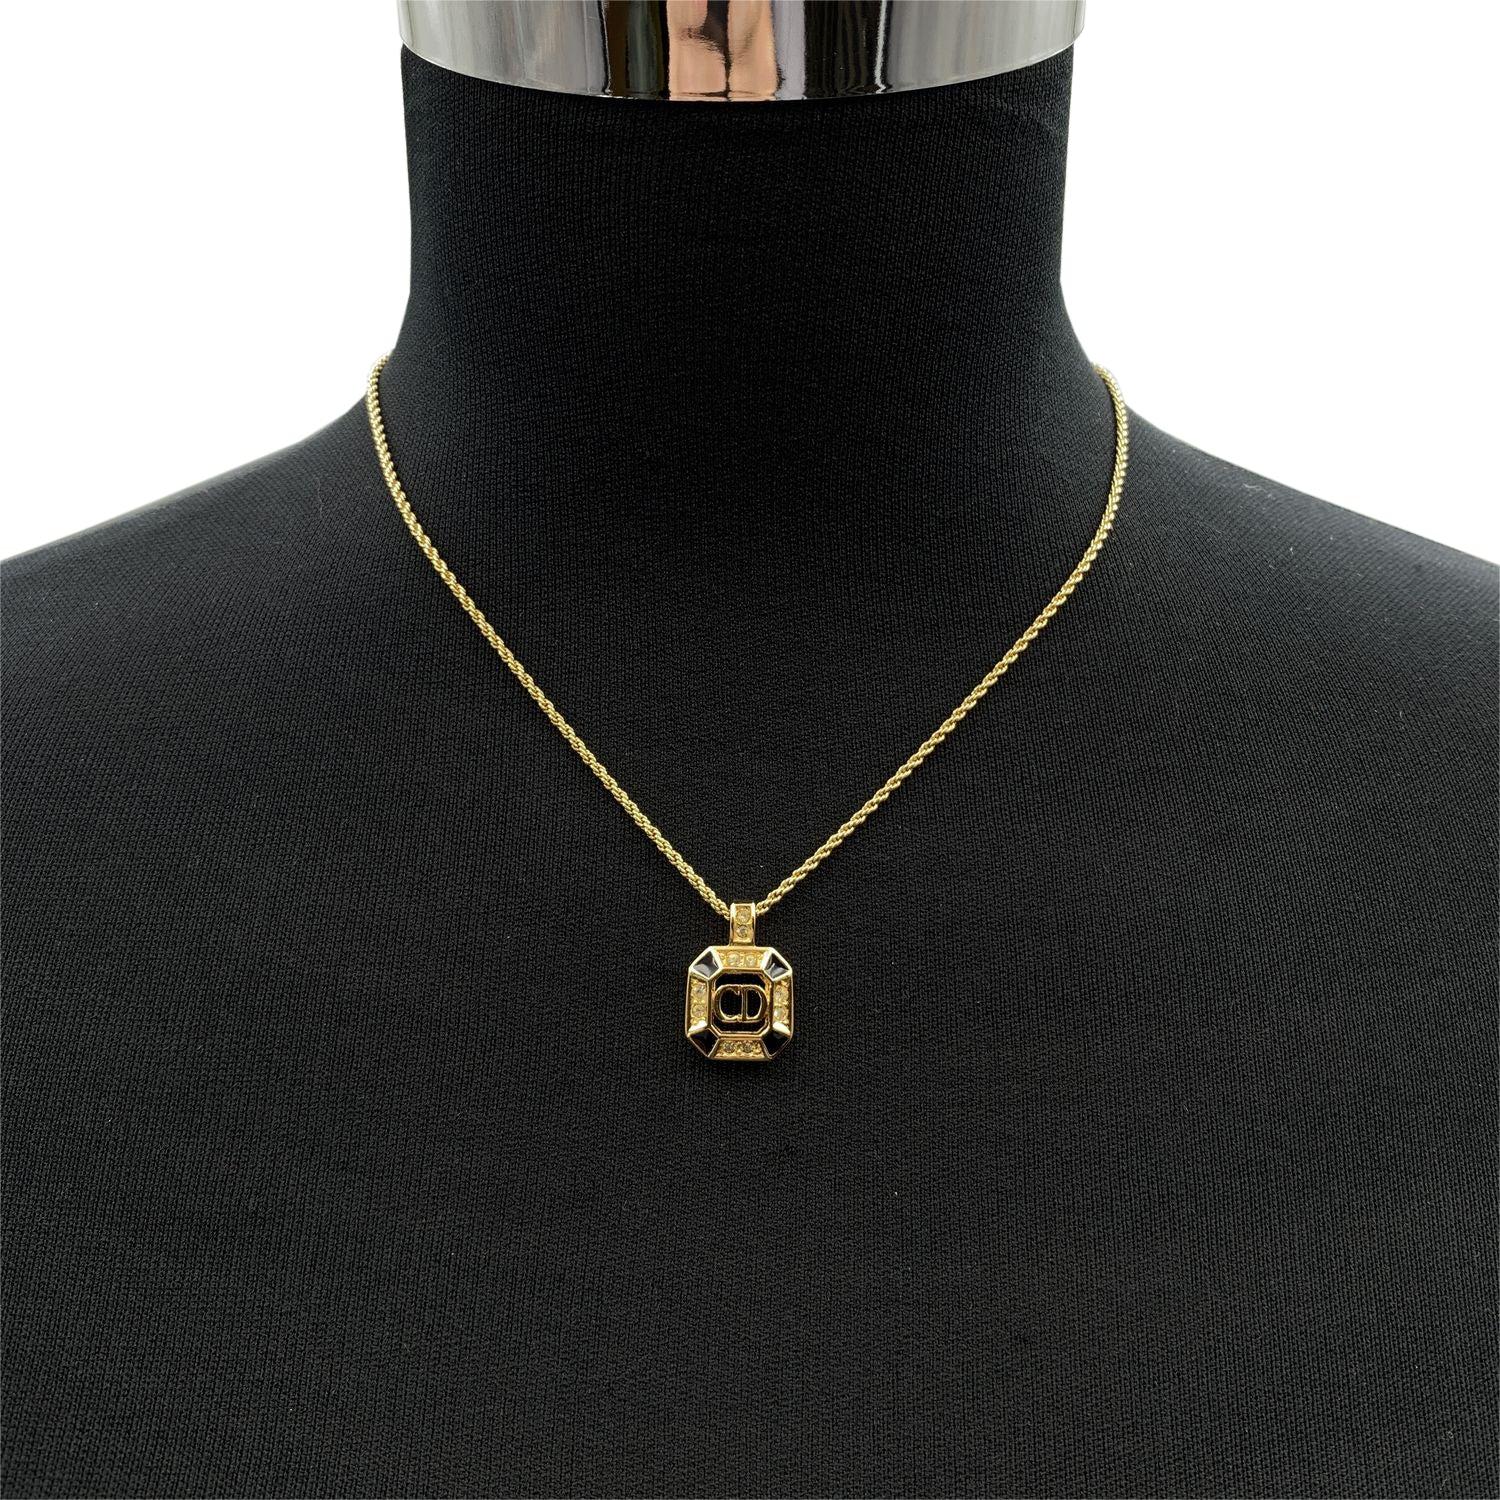 Collier vintage Christian Dior en chaîne de métal doré avec pendentif logo CD carré, agrémenté de petits strass et d'émail noir. Fermeture par anneau à ressort. Longueur de la chaîne : environ 16.5 inches - 42 cm Condition A - EXCELLENT Utilisé avec